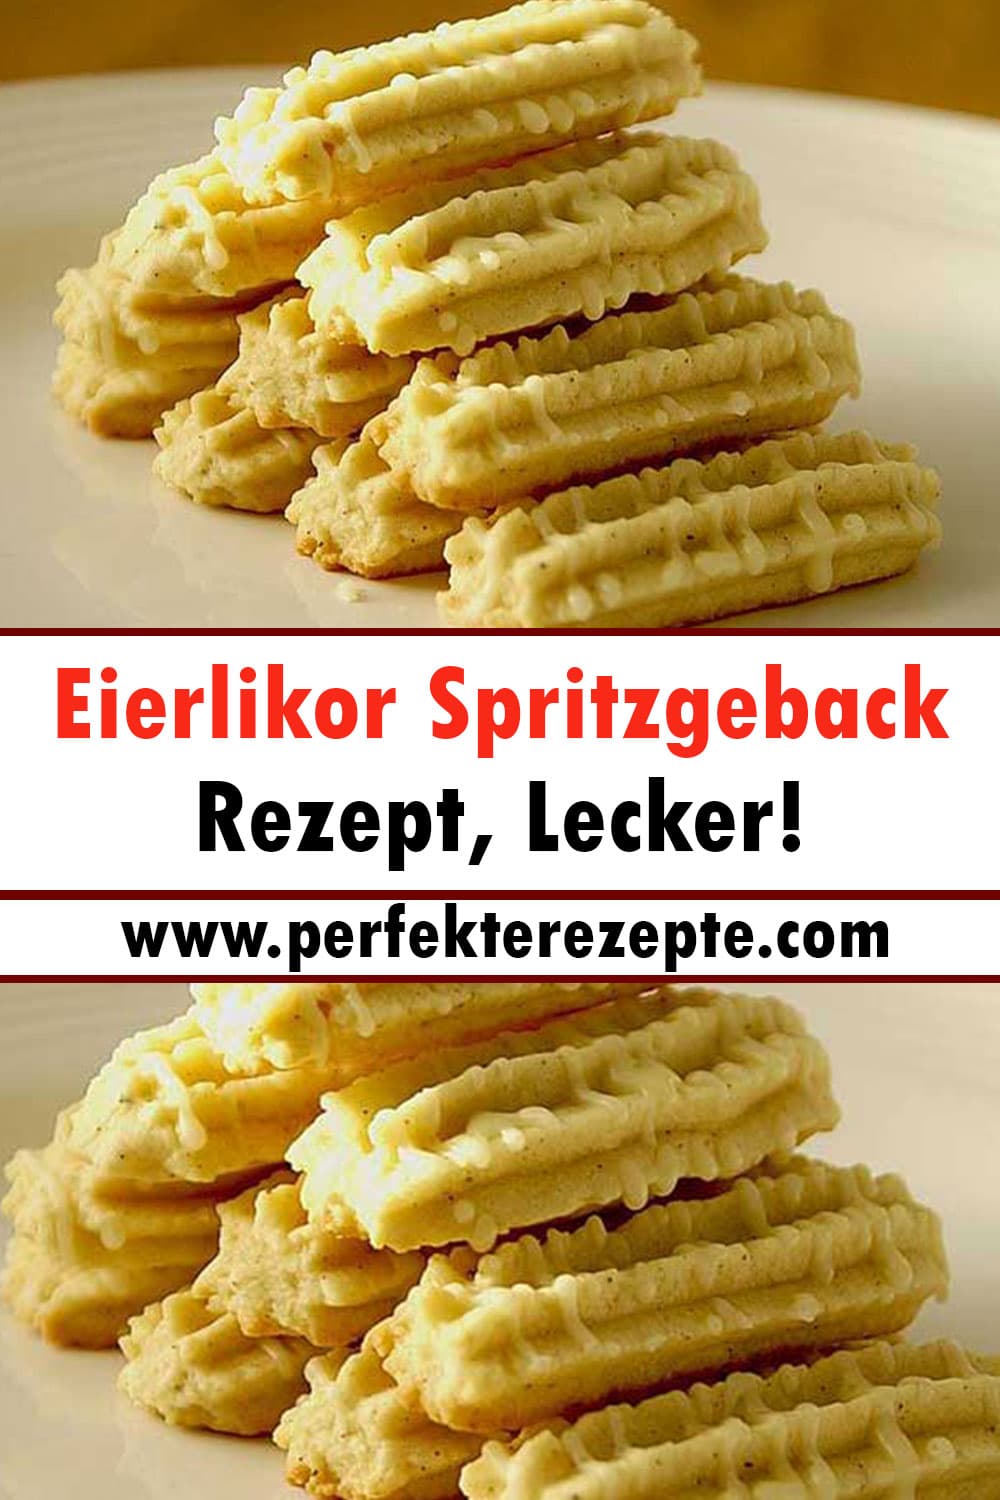 Eierlikor Spritzgeback Rezept, Lecker!